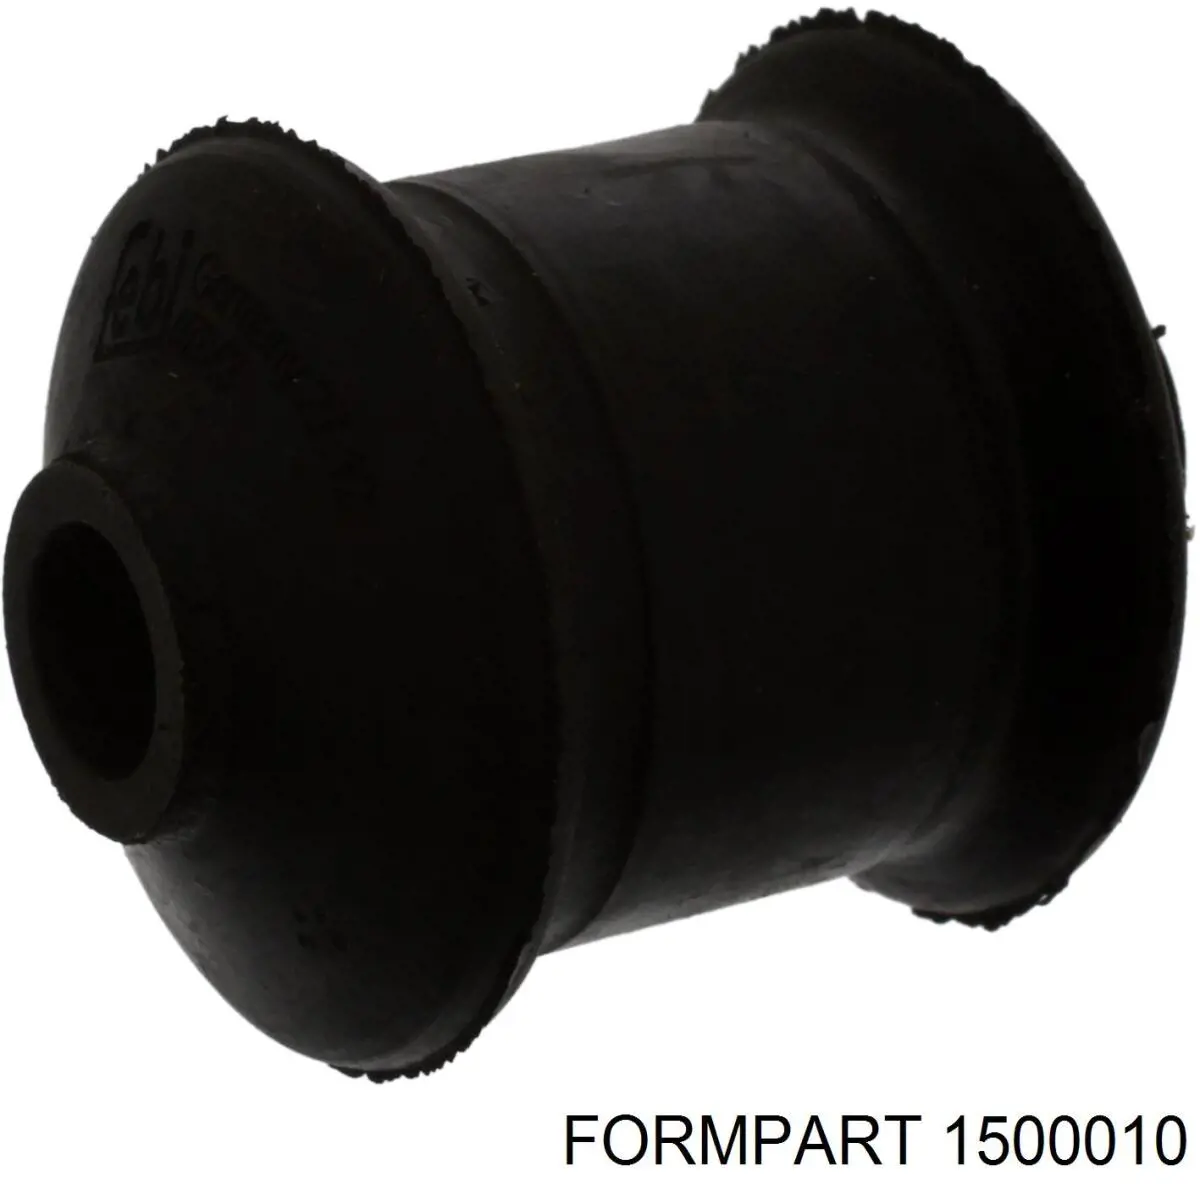 1500010 Formpart/Otoform silentblock de suspensión delantero inferior